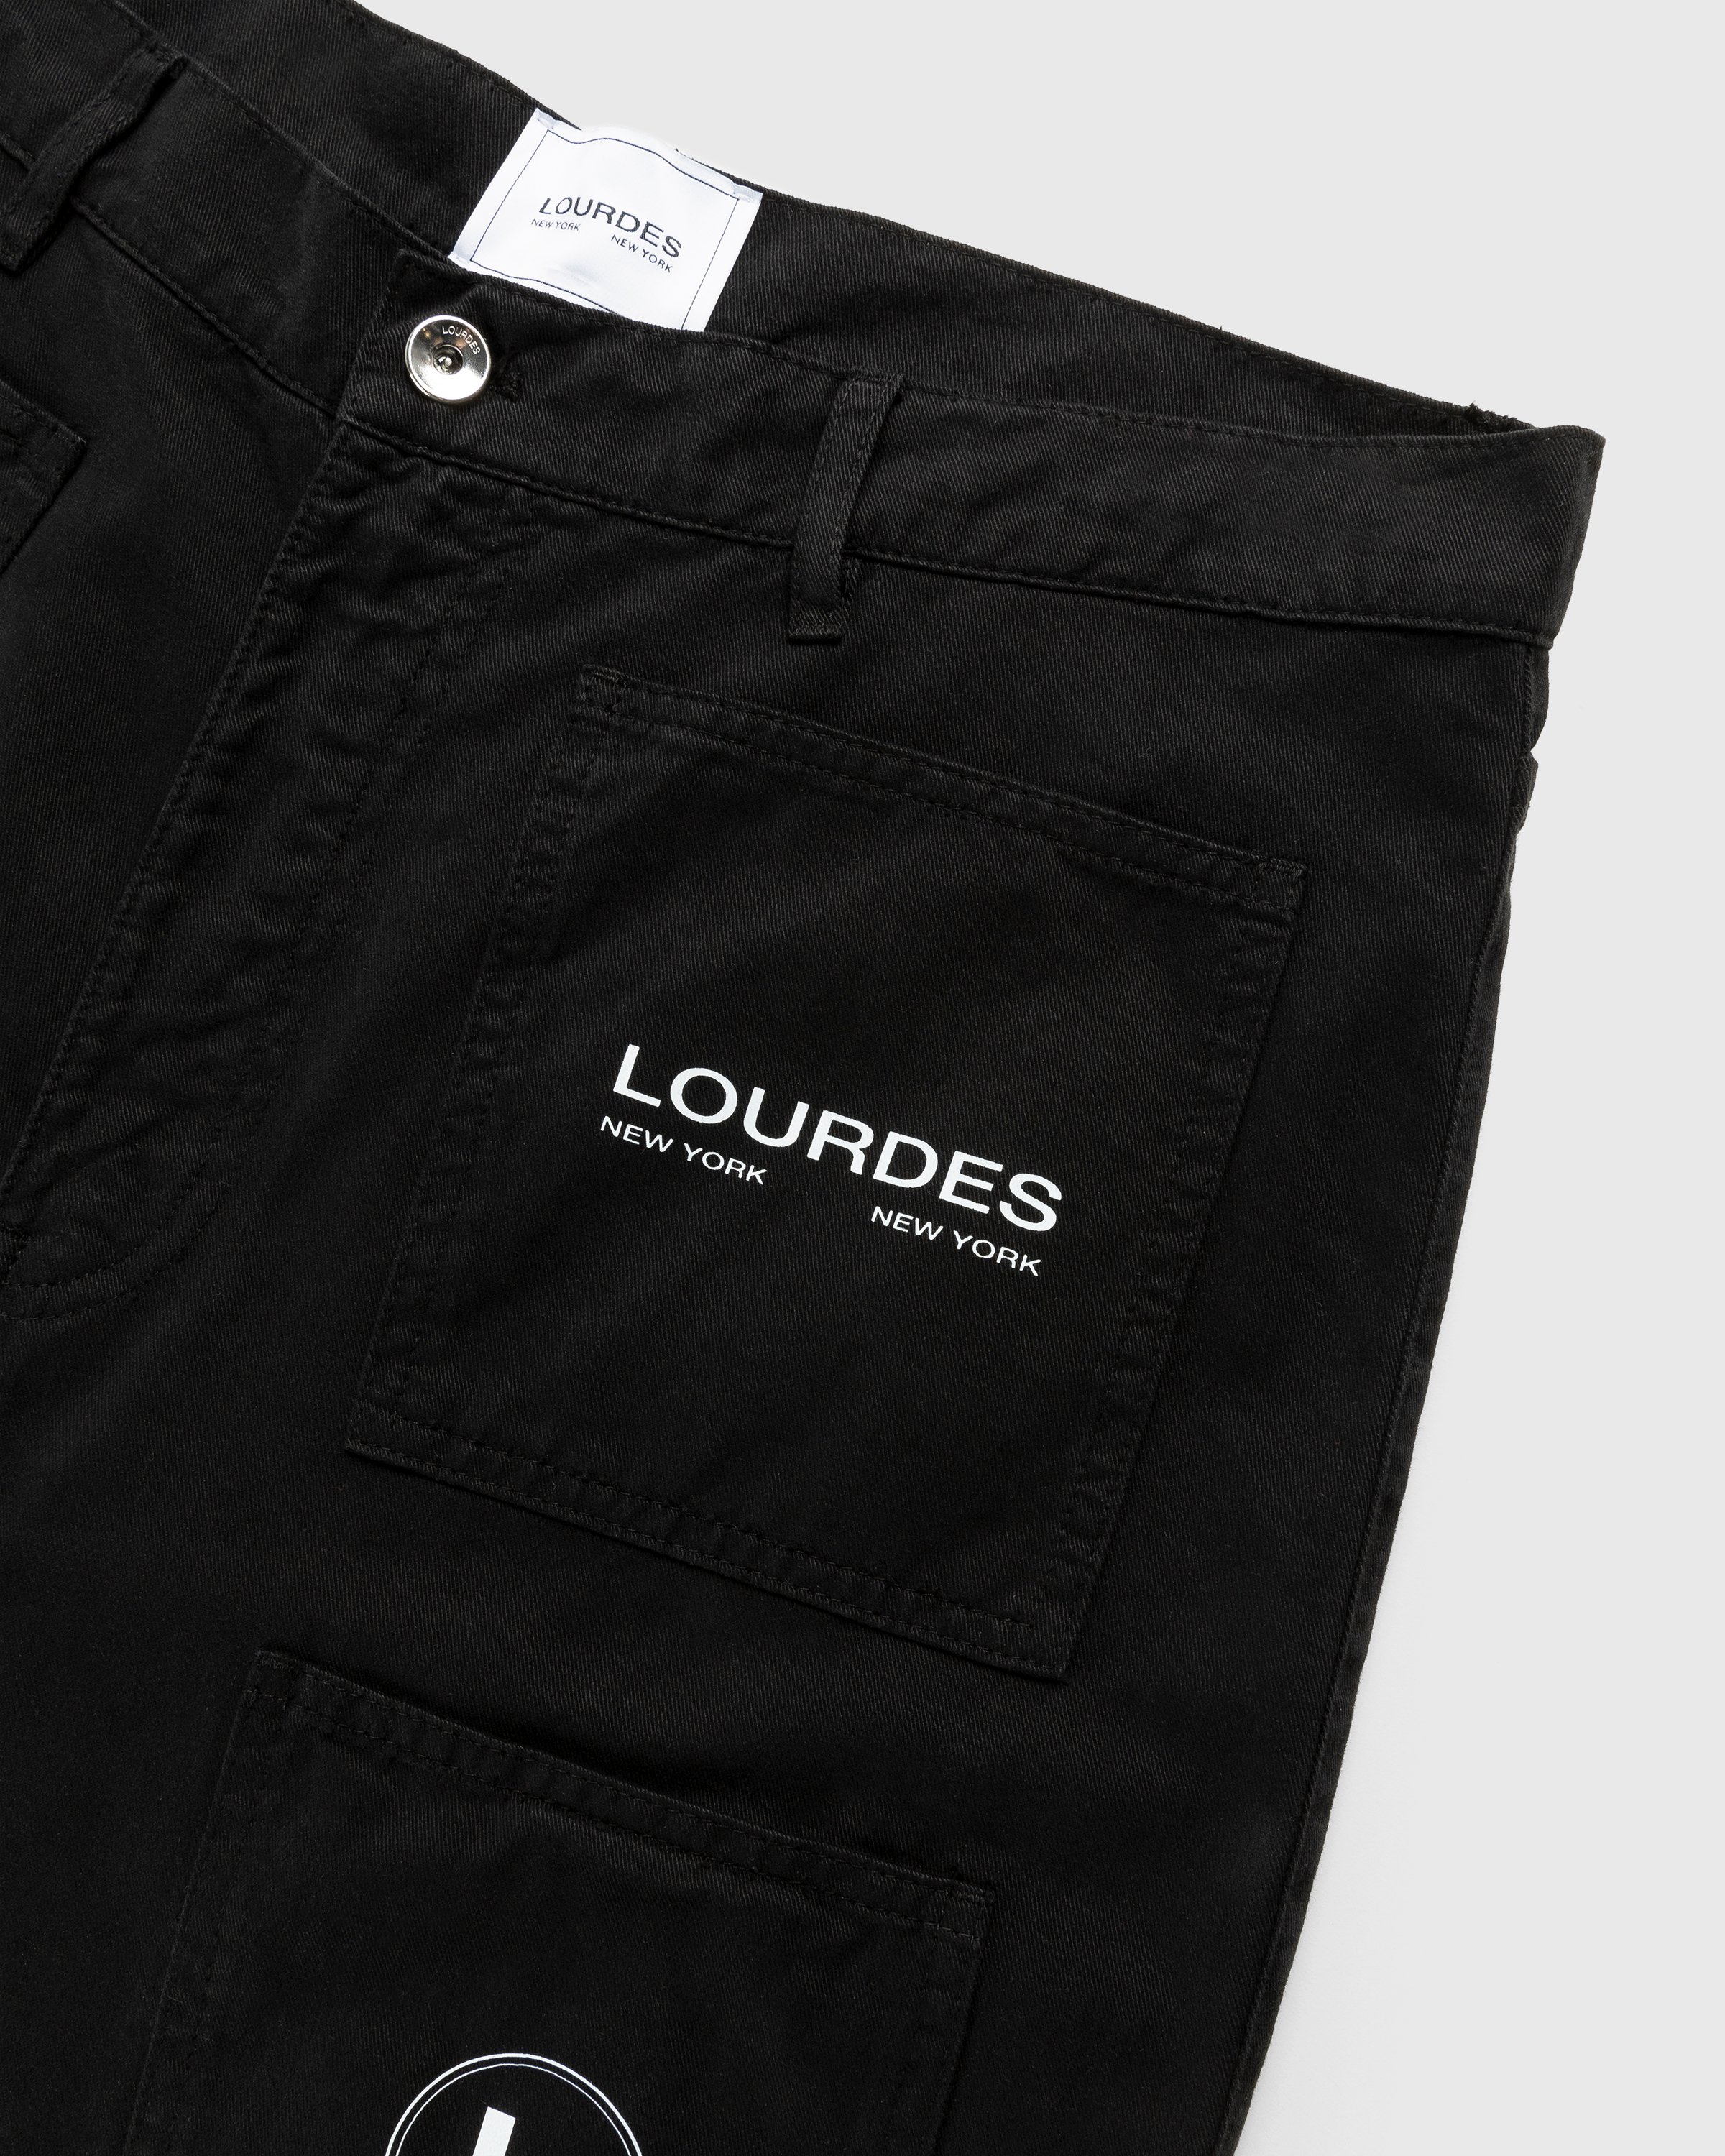 Lourdes New York - Multi-Pocket Cargo Short Black - Clothing - Black - Image 6